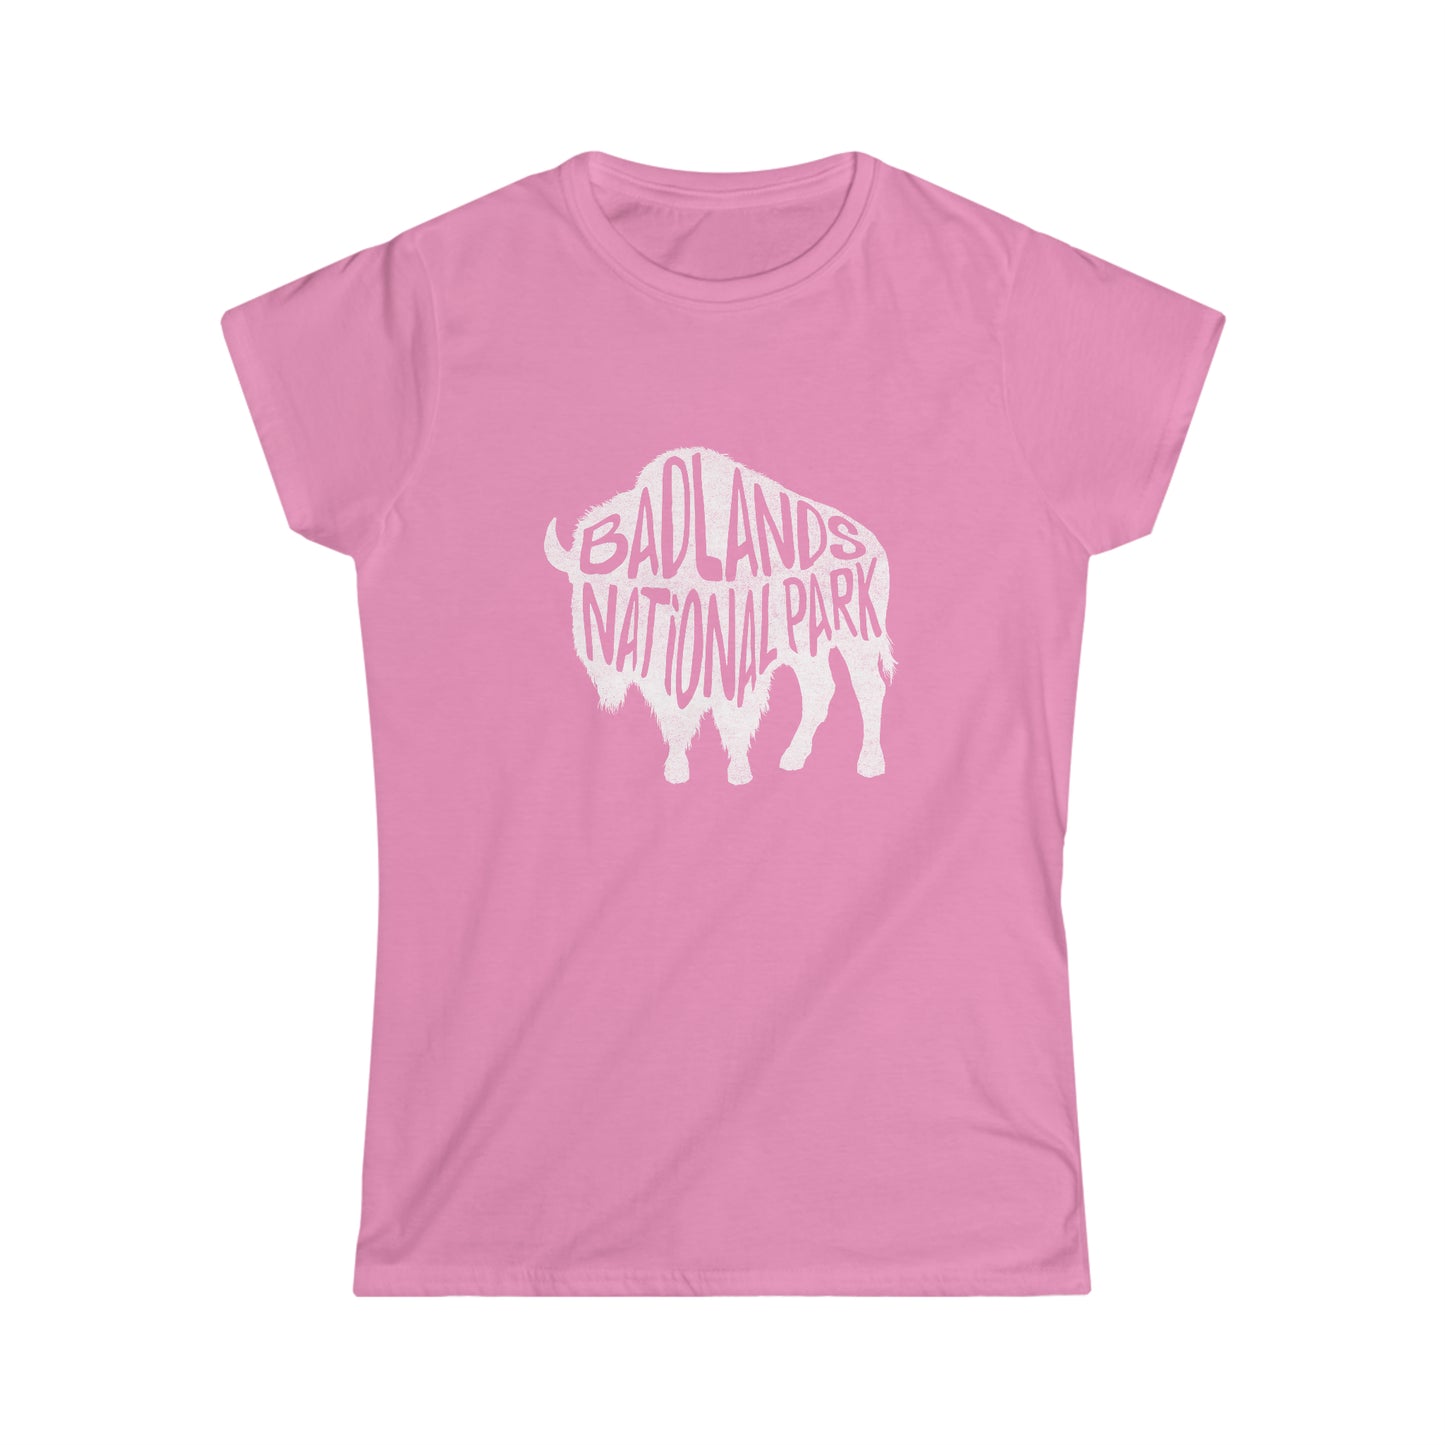 Badlands National Park Women's T-Shirt - Bison